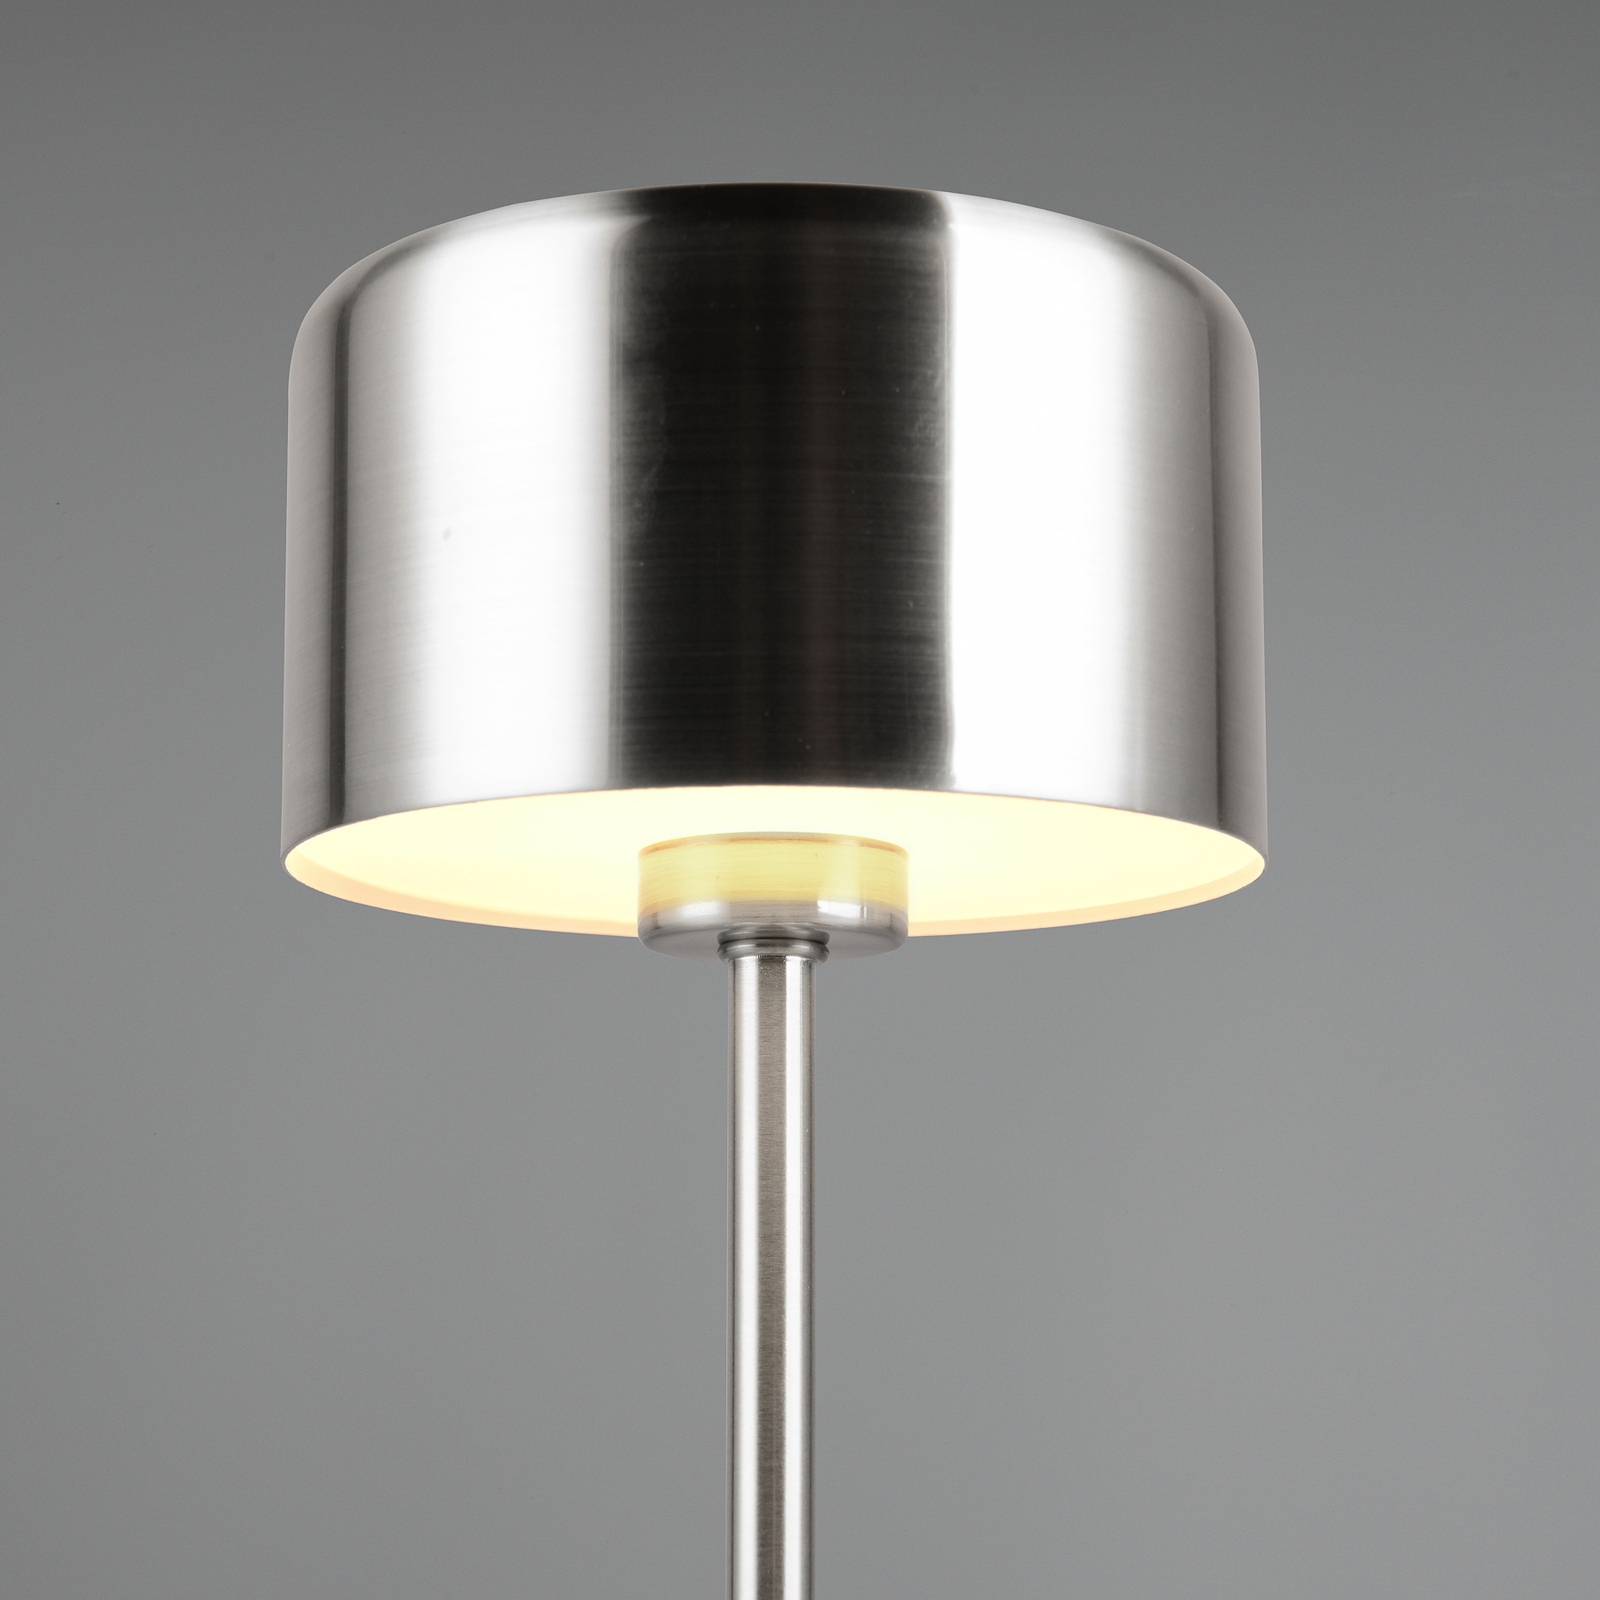 Jeff LED baterijska stolna lampa, boja nikla, visina 30 cm, metal